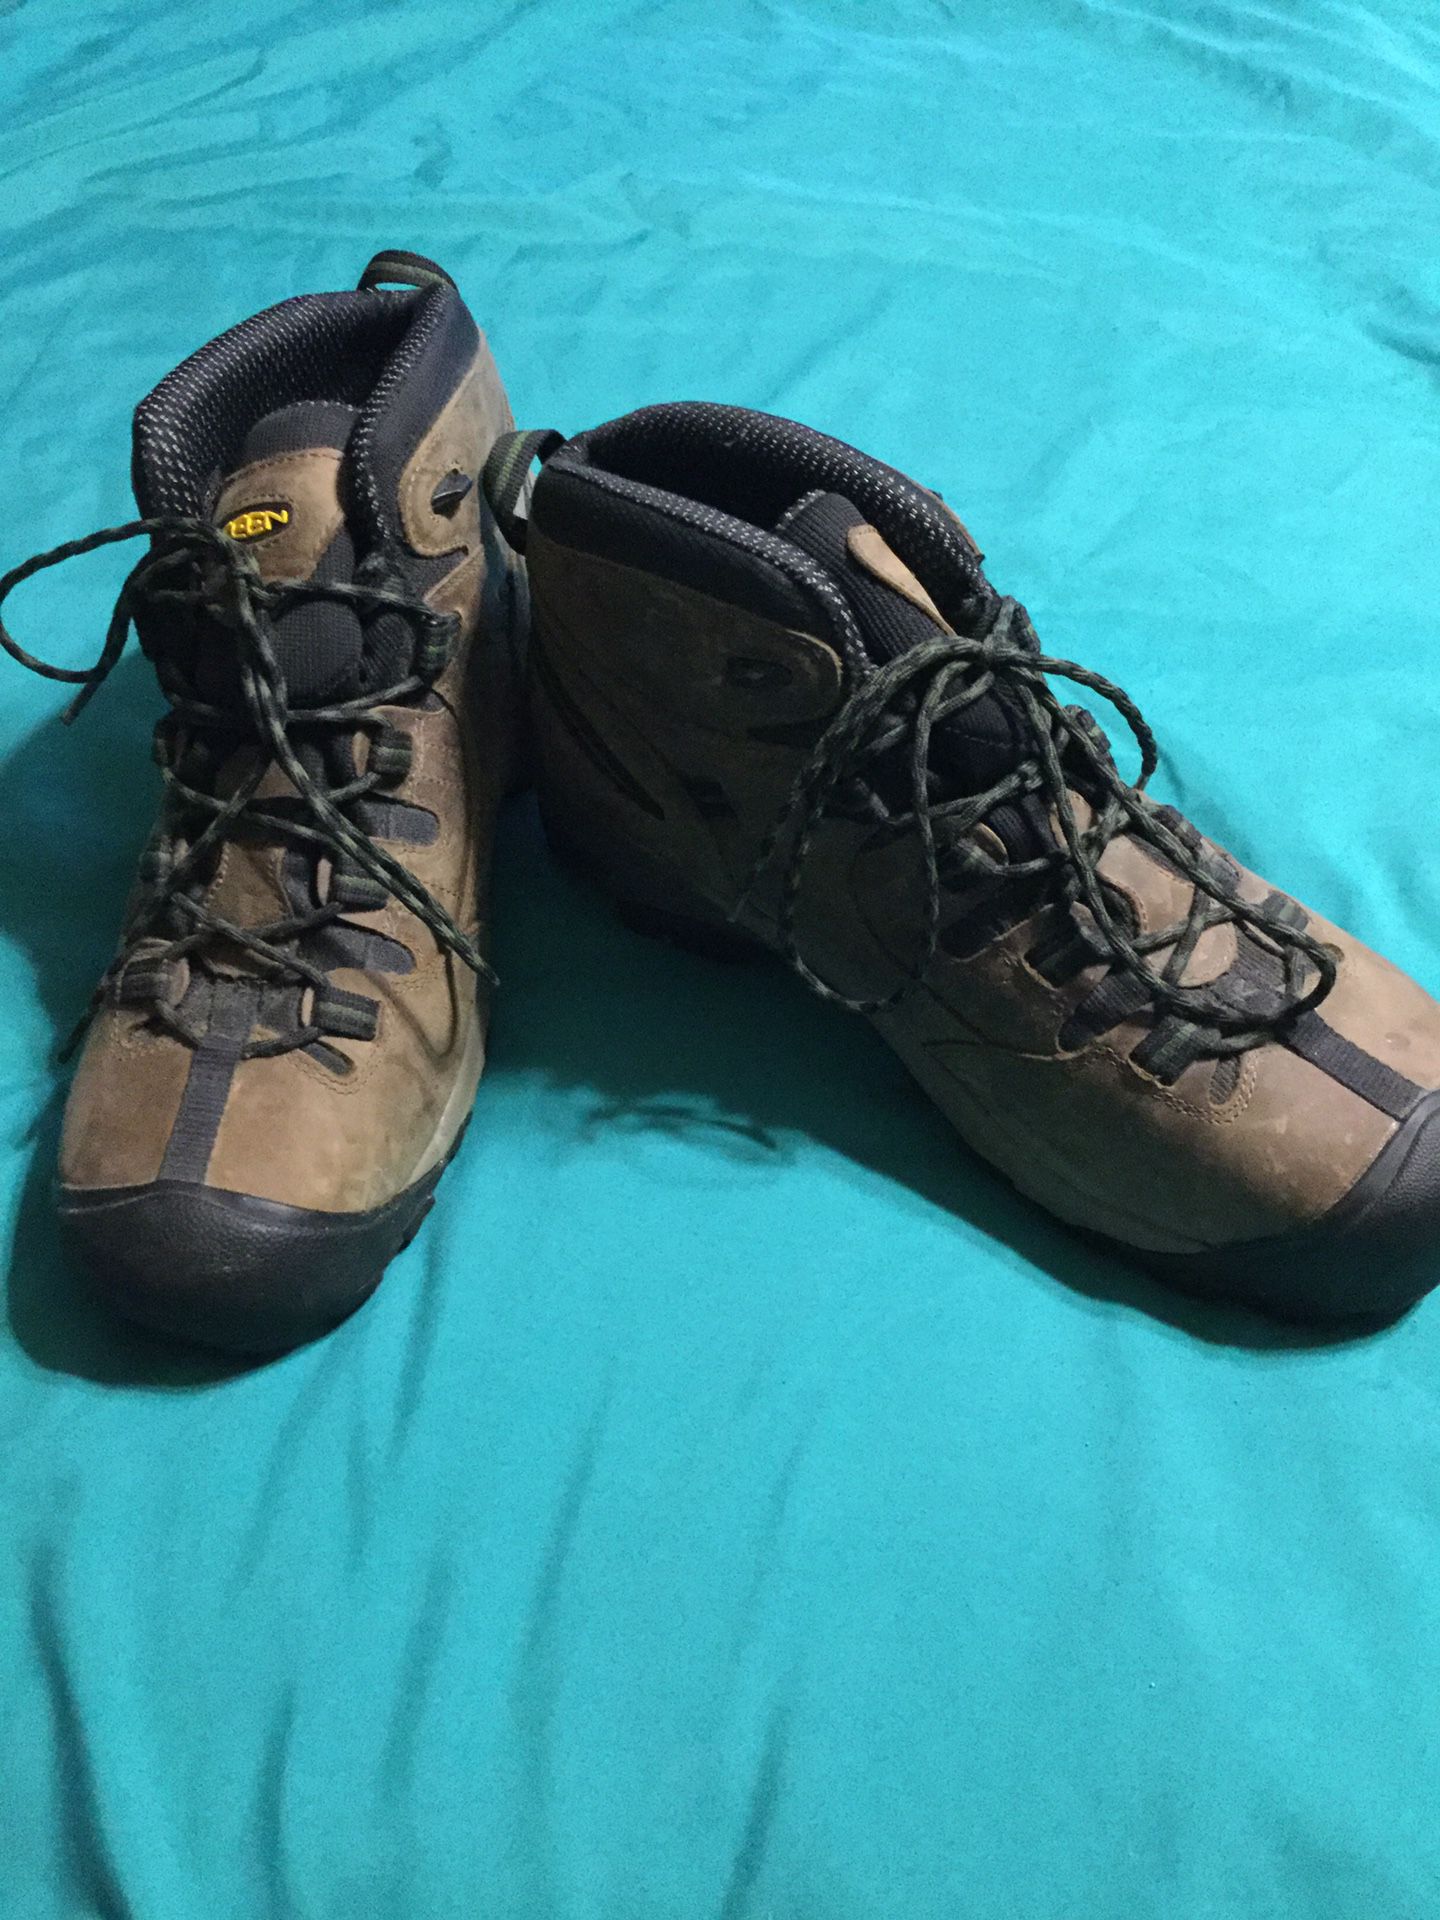 Men’s size 12 wide steel toe work boots